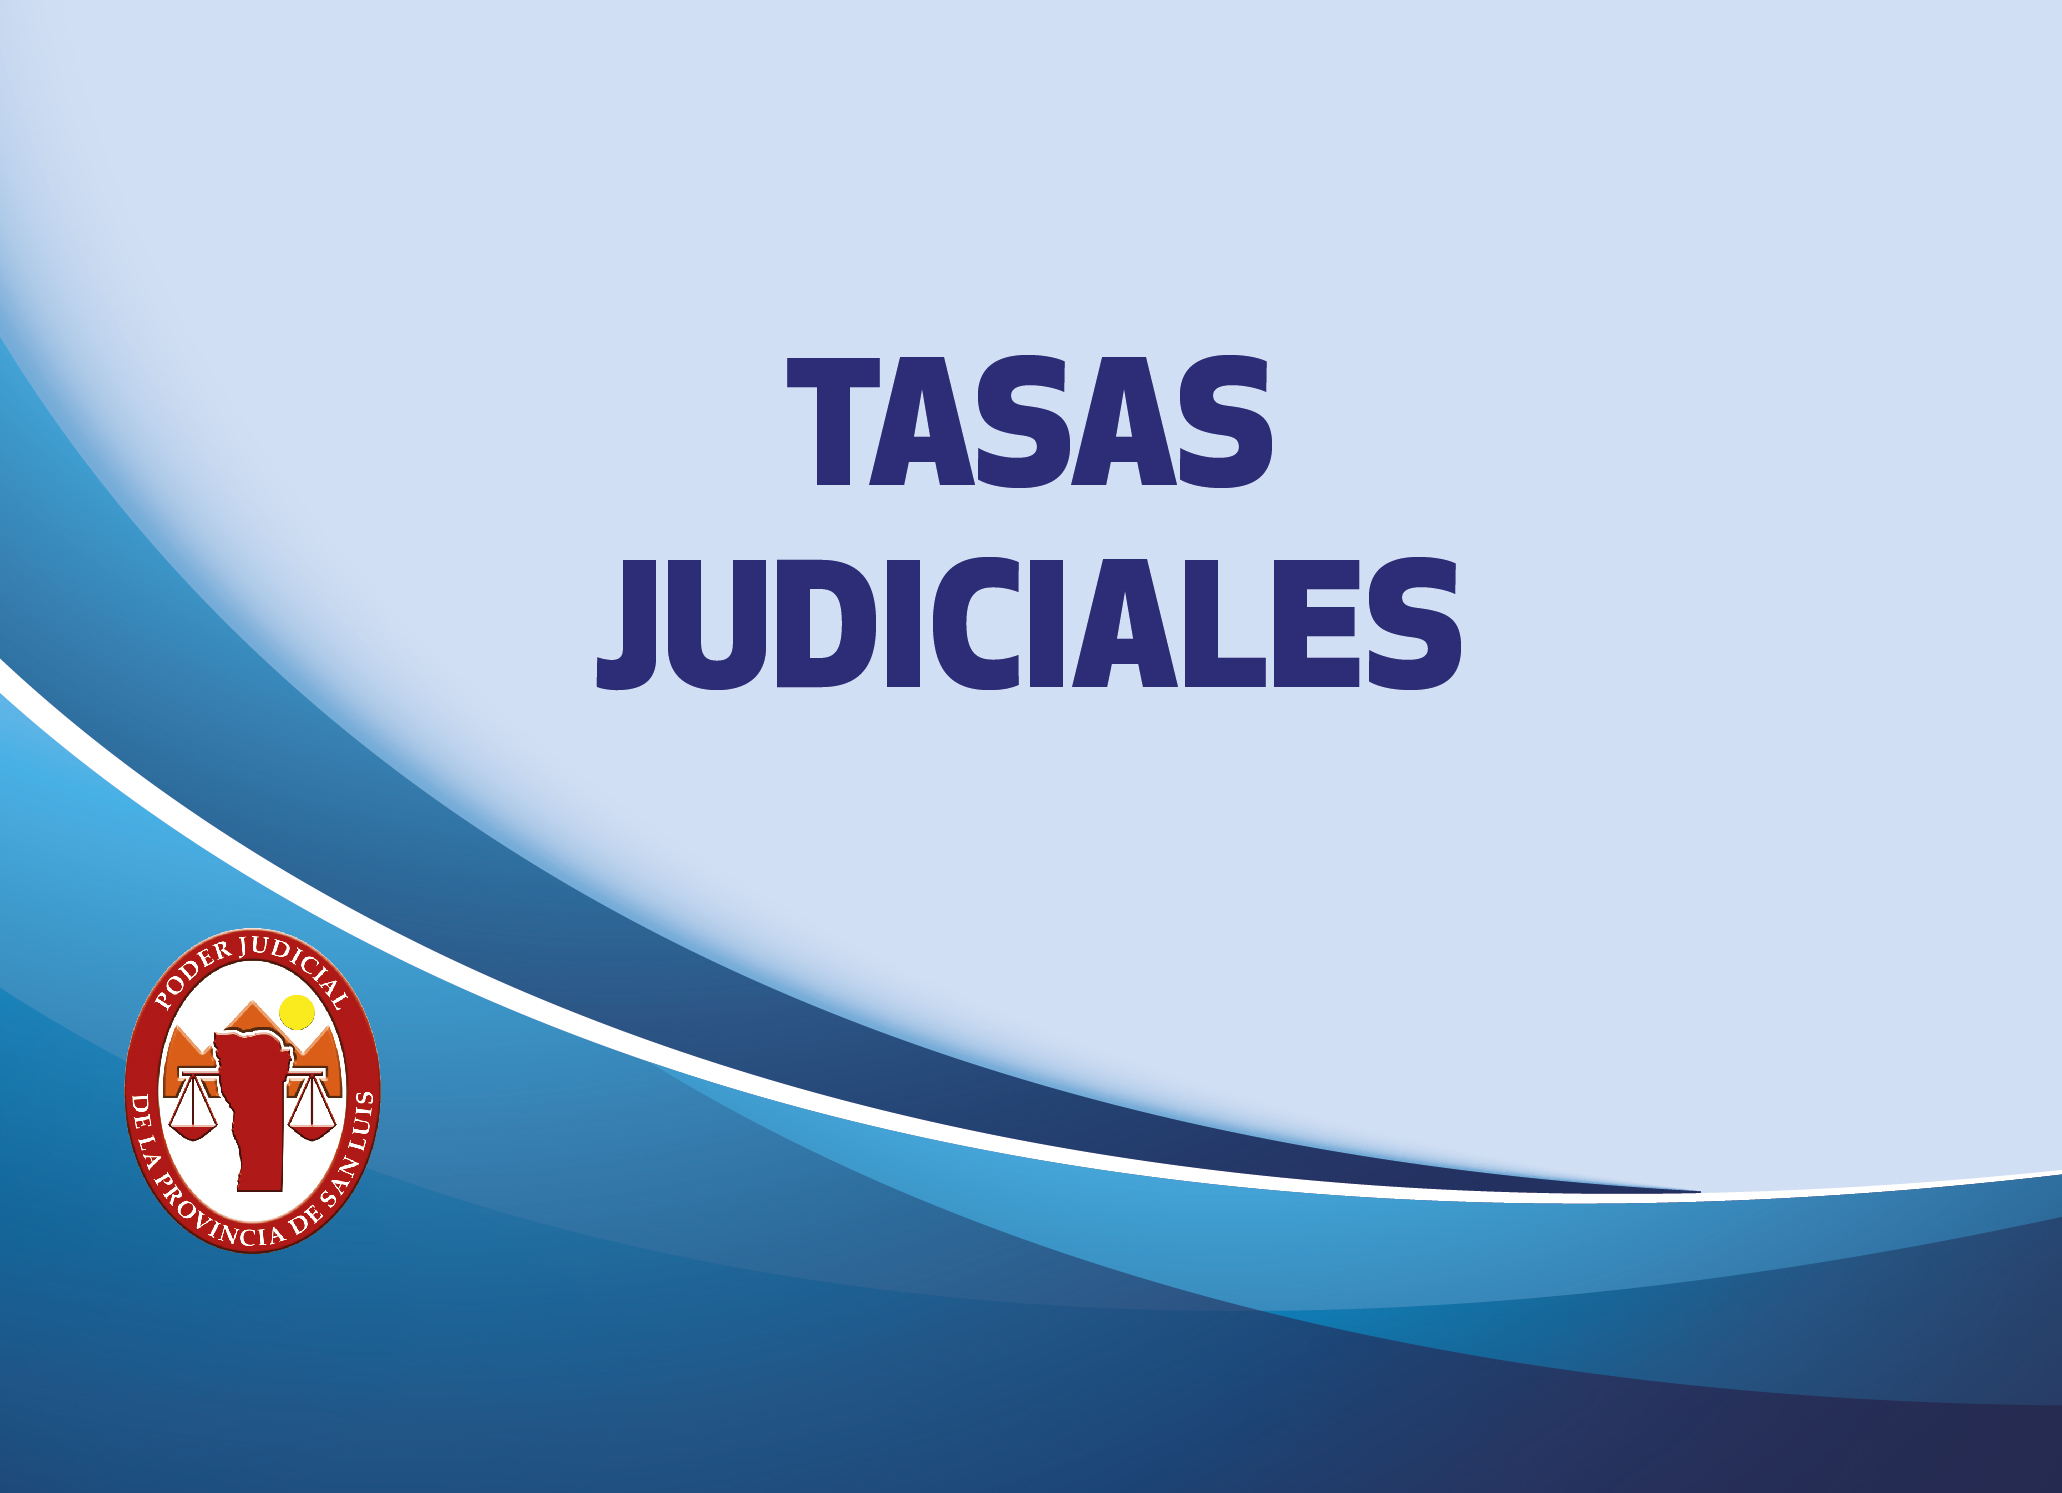 TASAS JUDICIALES: GENERACIÓN DE CUPÓN DE PAGO PARA USUARIOS SIN EXPEDIENTE